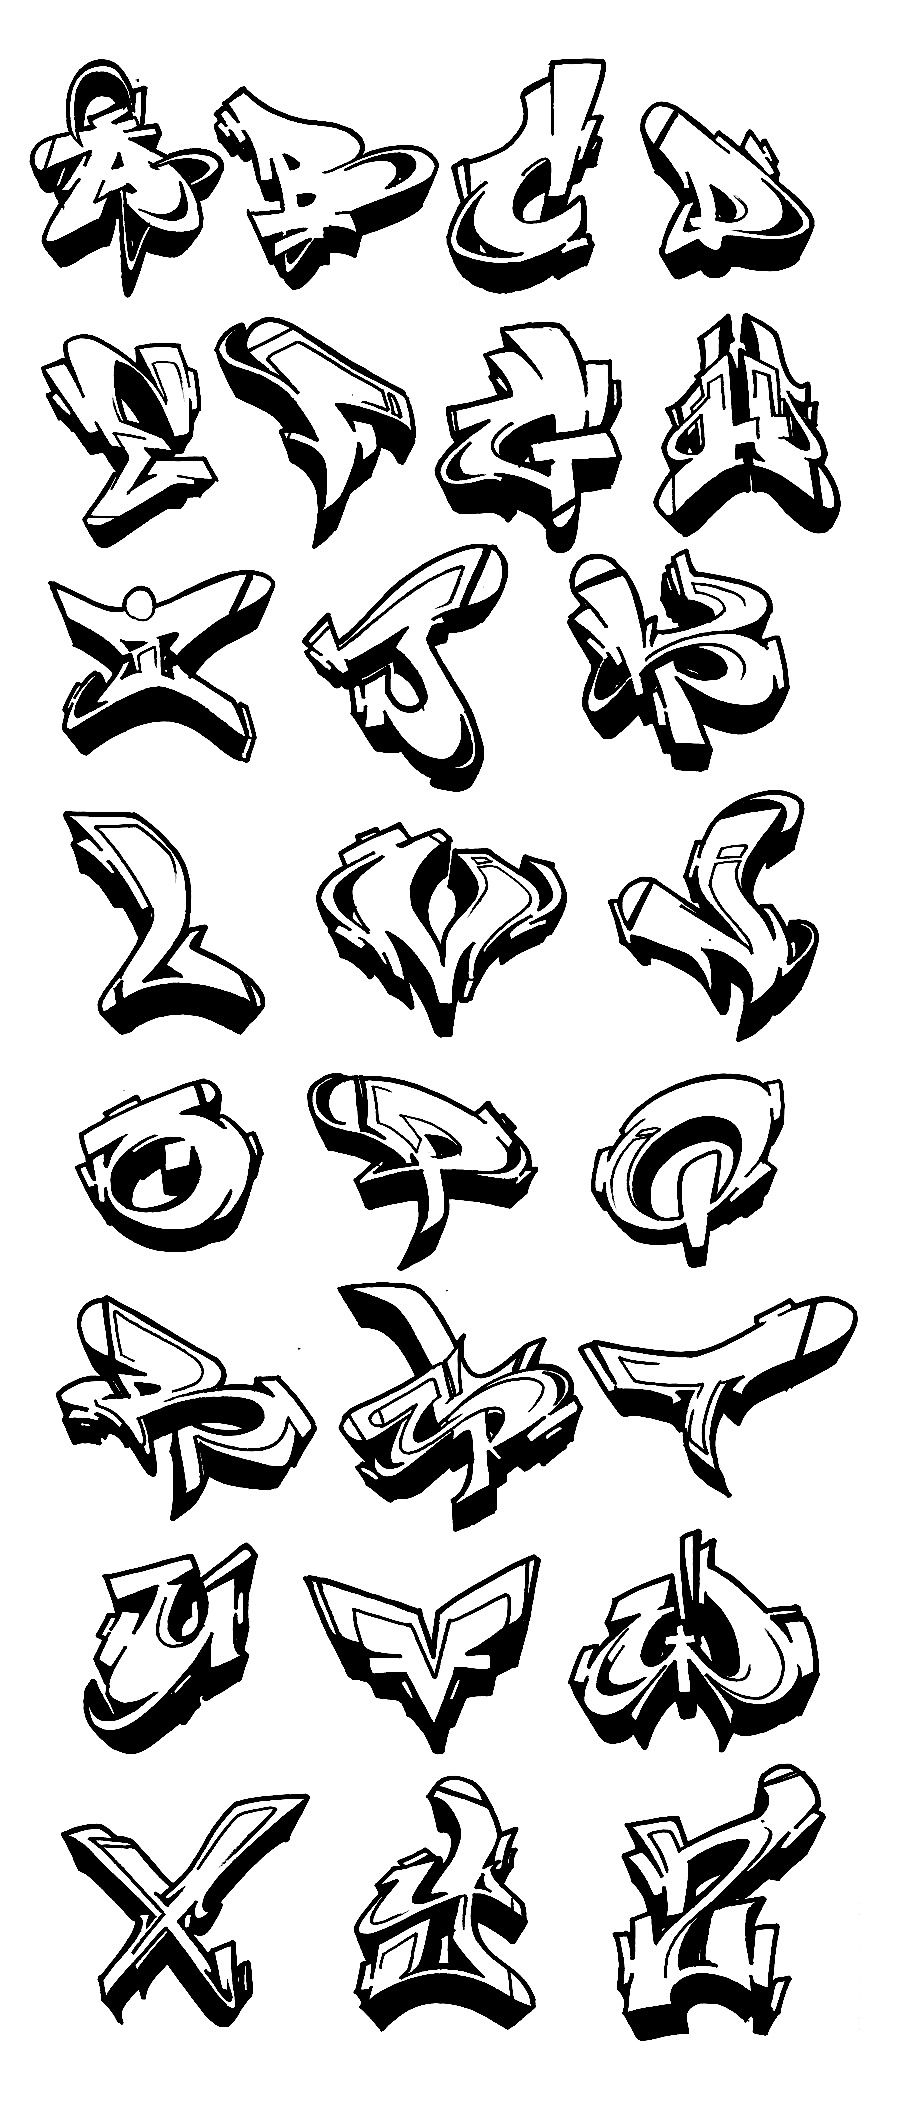 Graffiti Alphabet Wildstyle A Z 3D Graffiti Collection in Graffiti Schrift Buchstaben Az